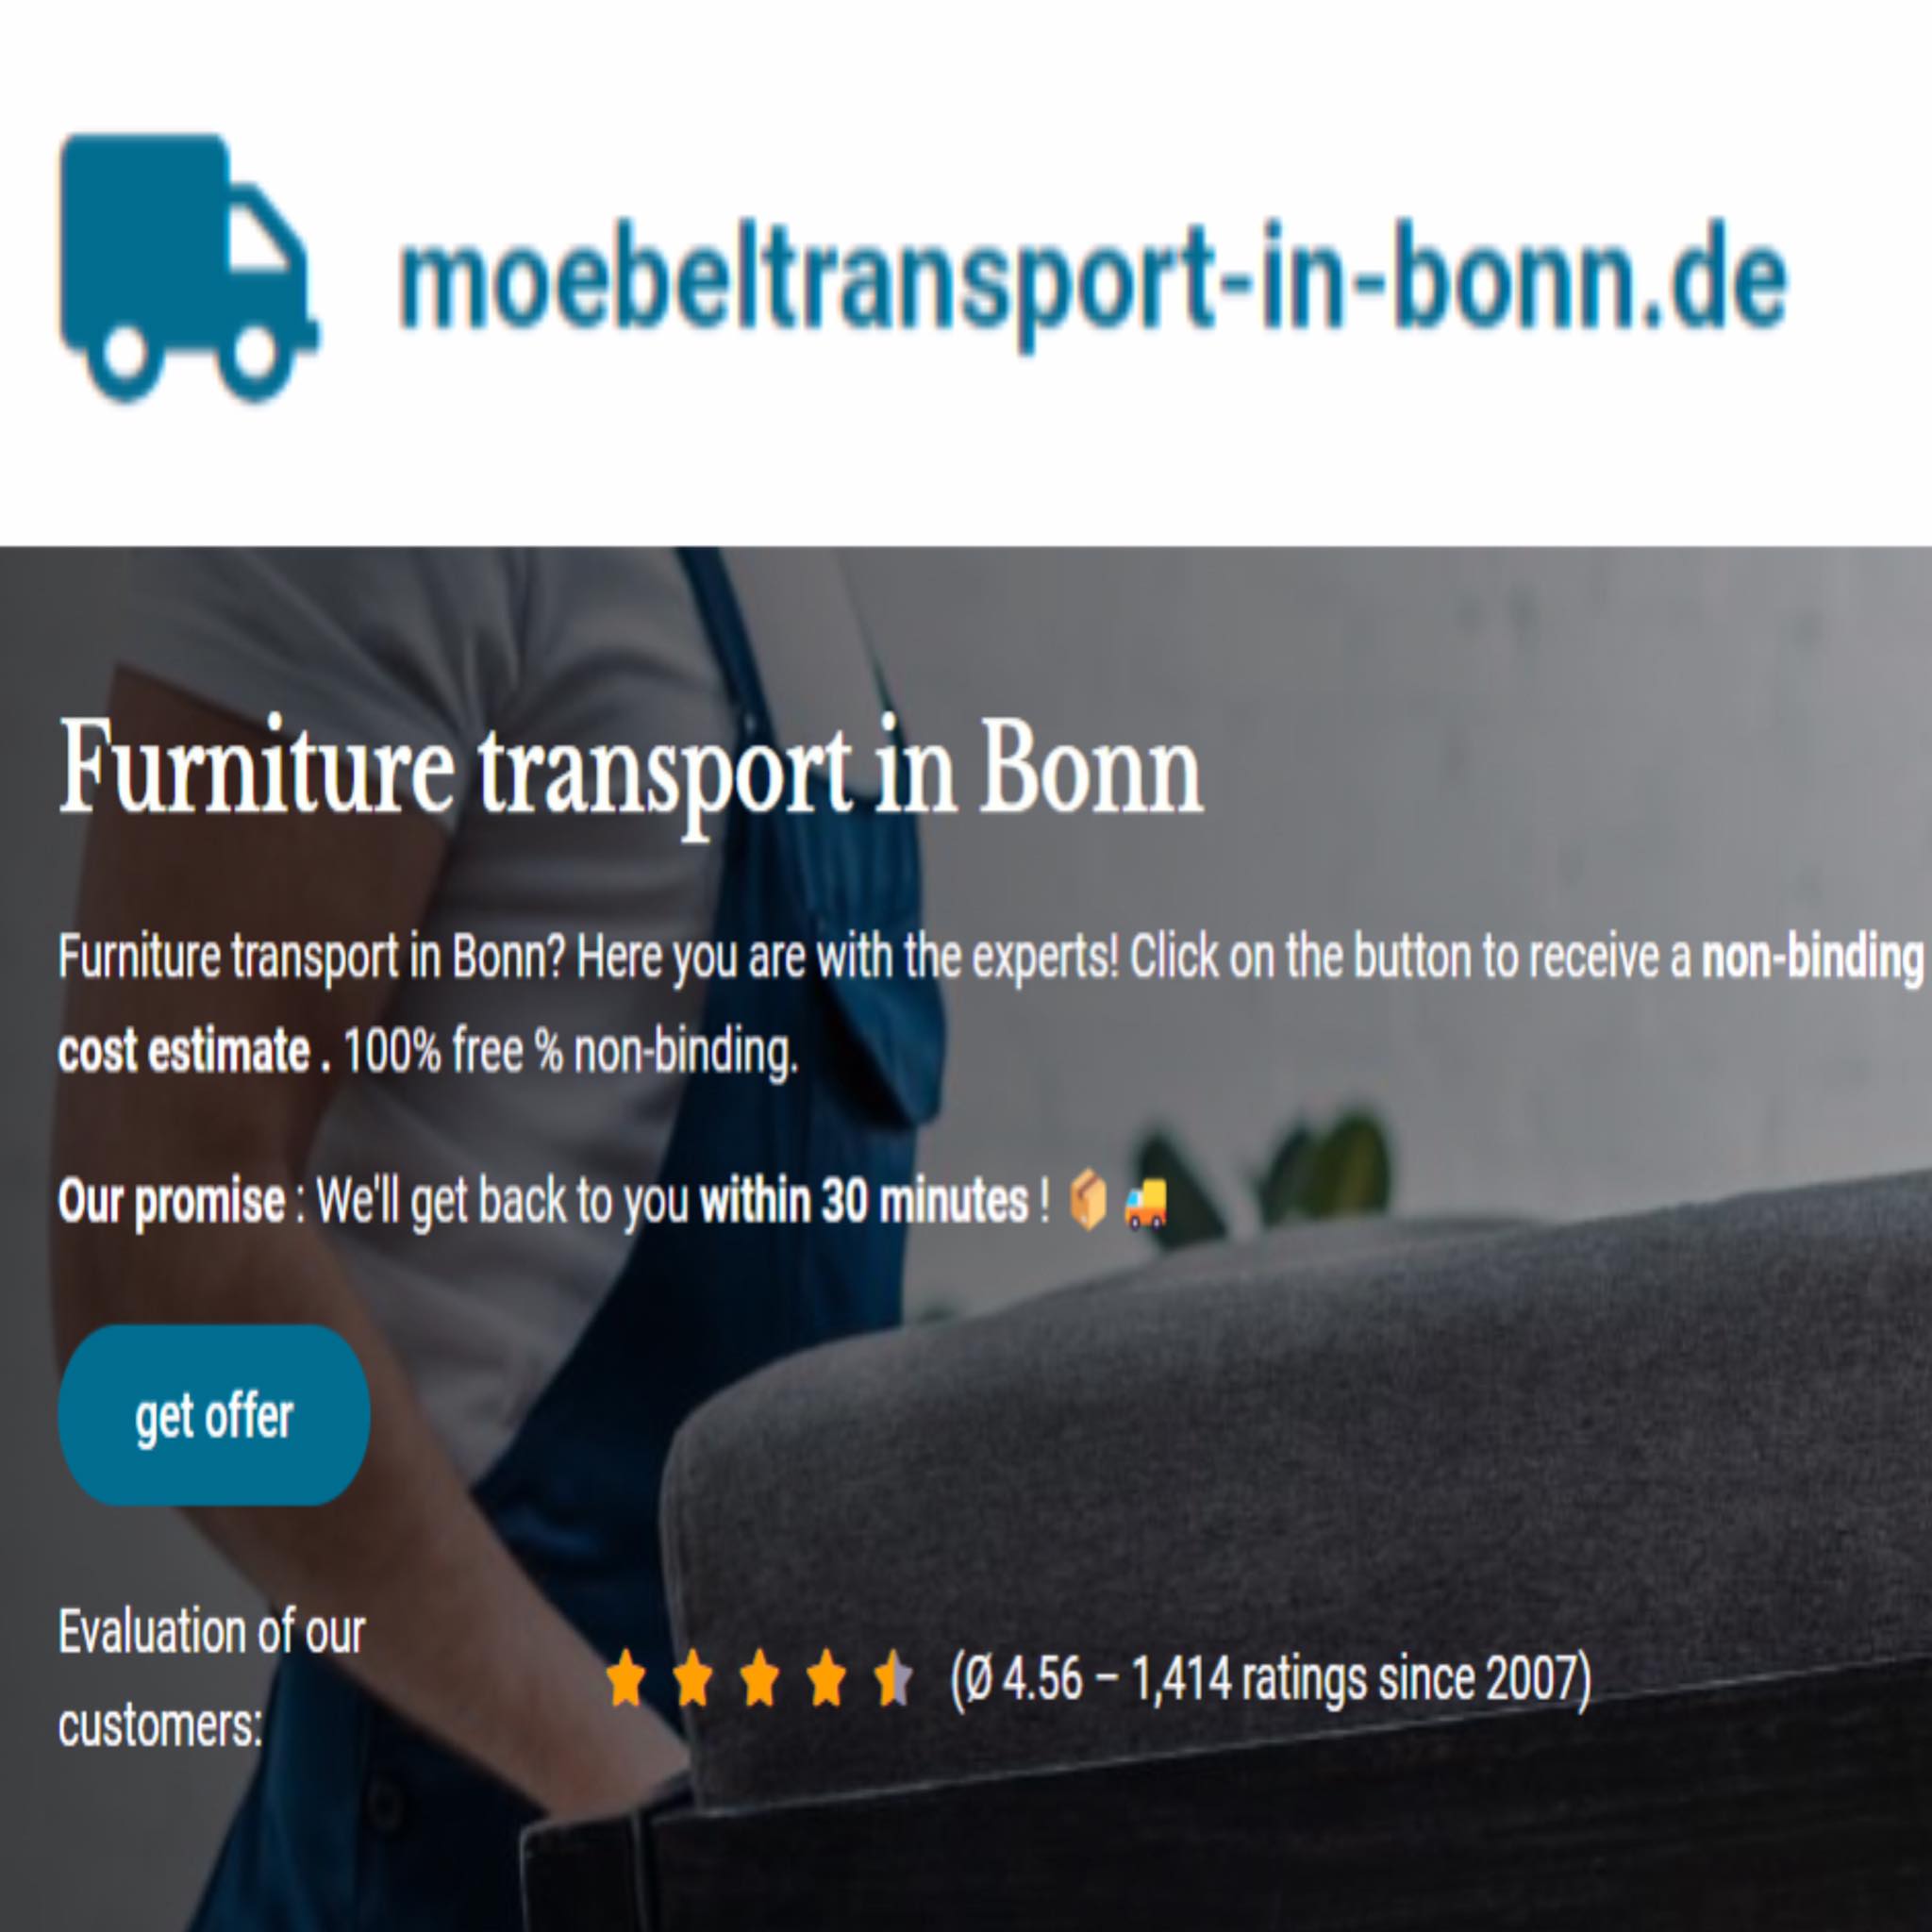 moebeltransport-in-bonn.de in Bonn